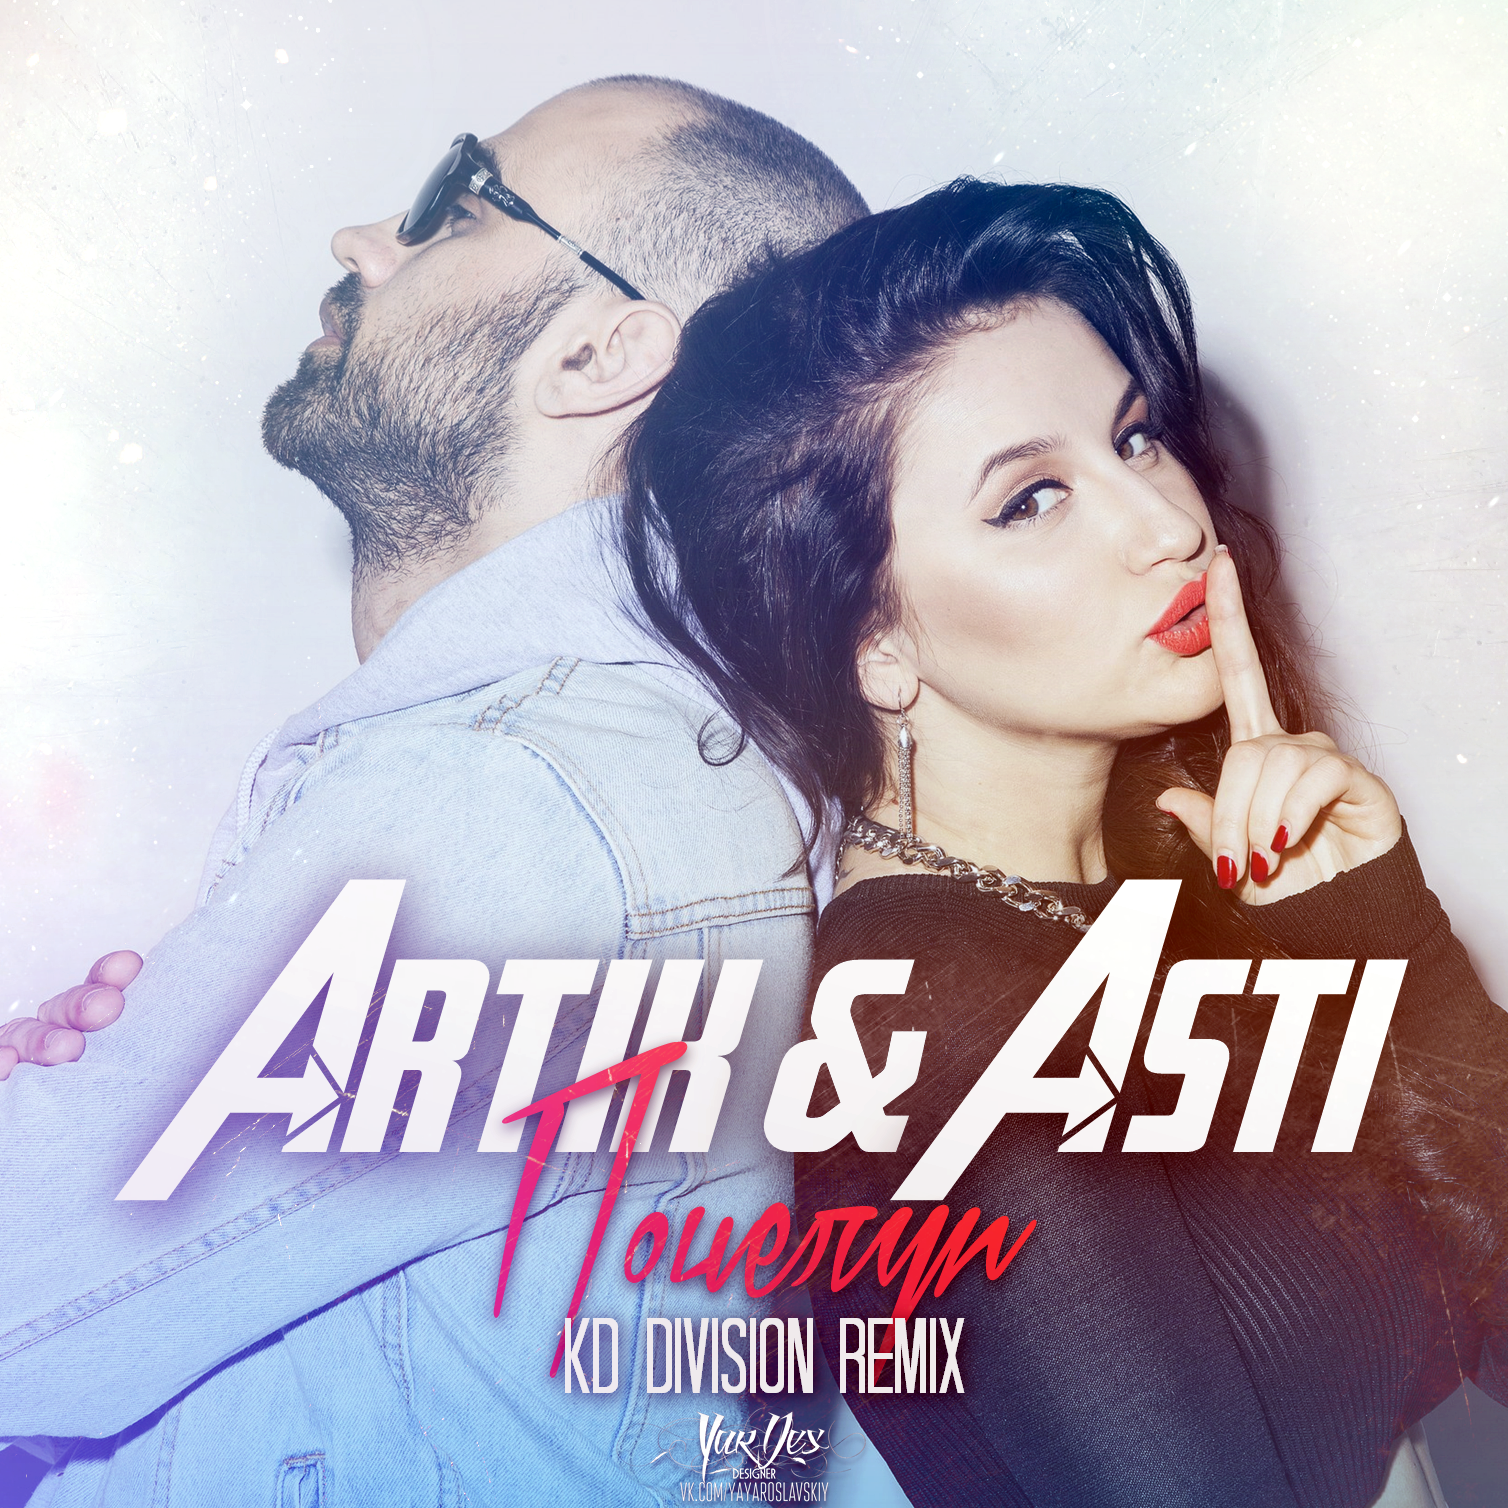 Группа artik & Asti. Группа artik & Asti альбомы. Artik Asti обложка. Артик и Асти 2015 год.